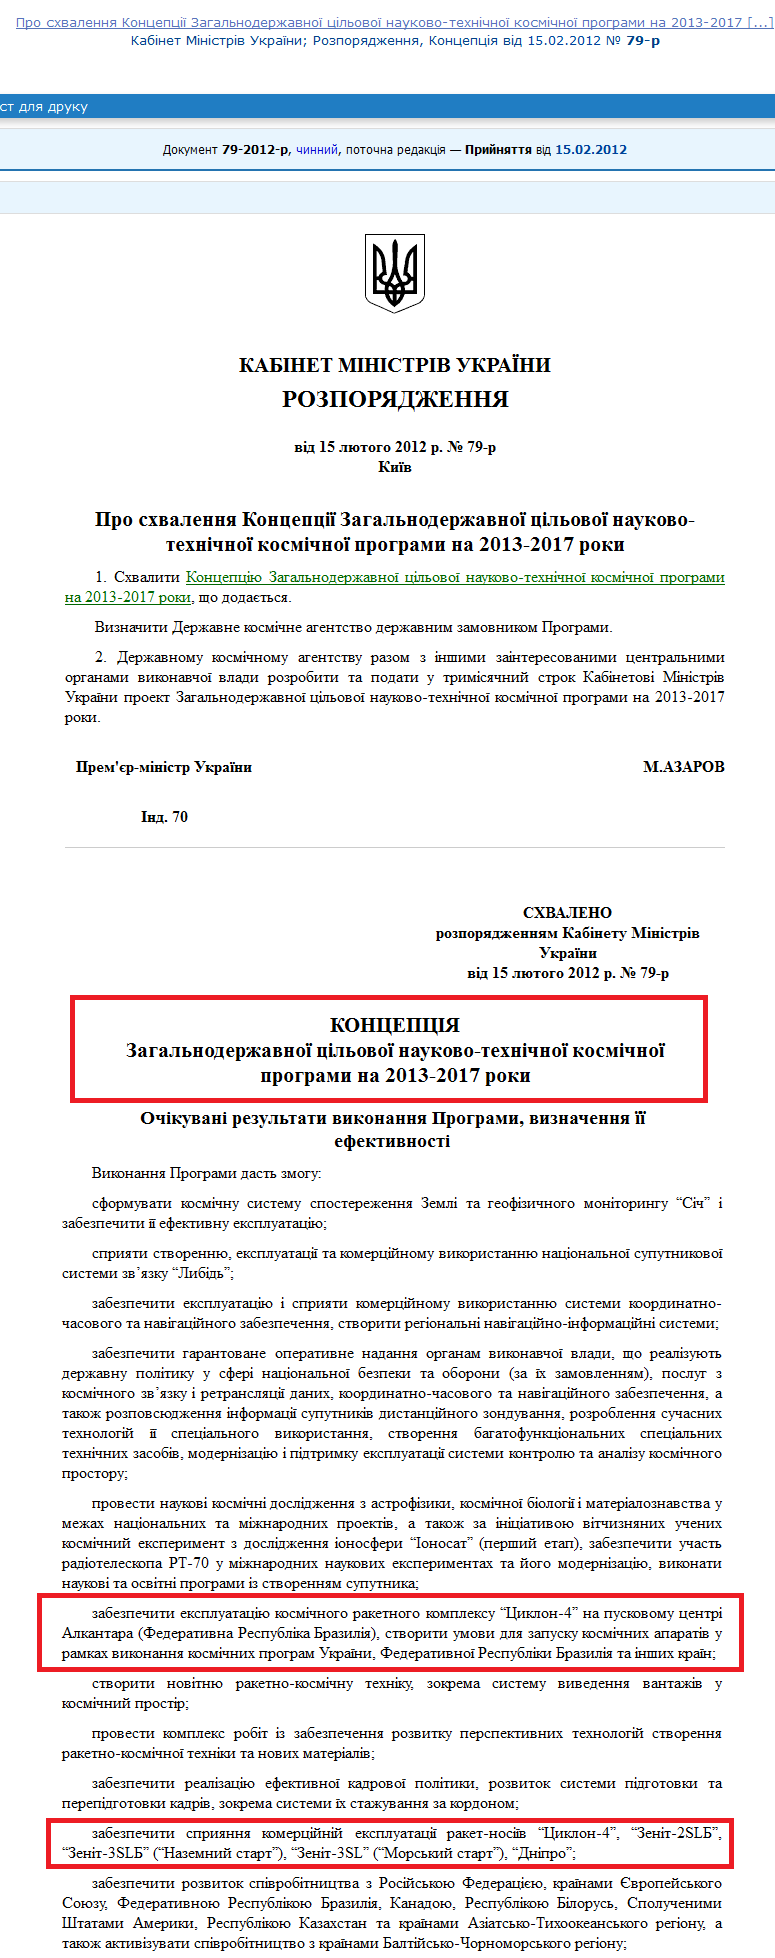 http://zakon4.rada.gov.ua/laws/show/79-2012-%D1%80